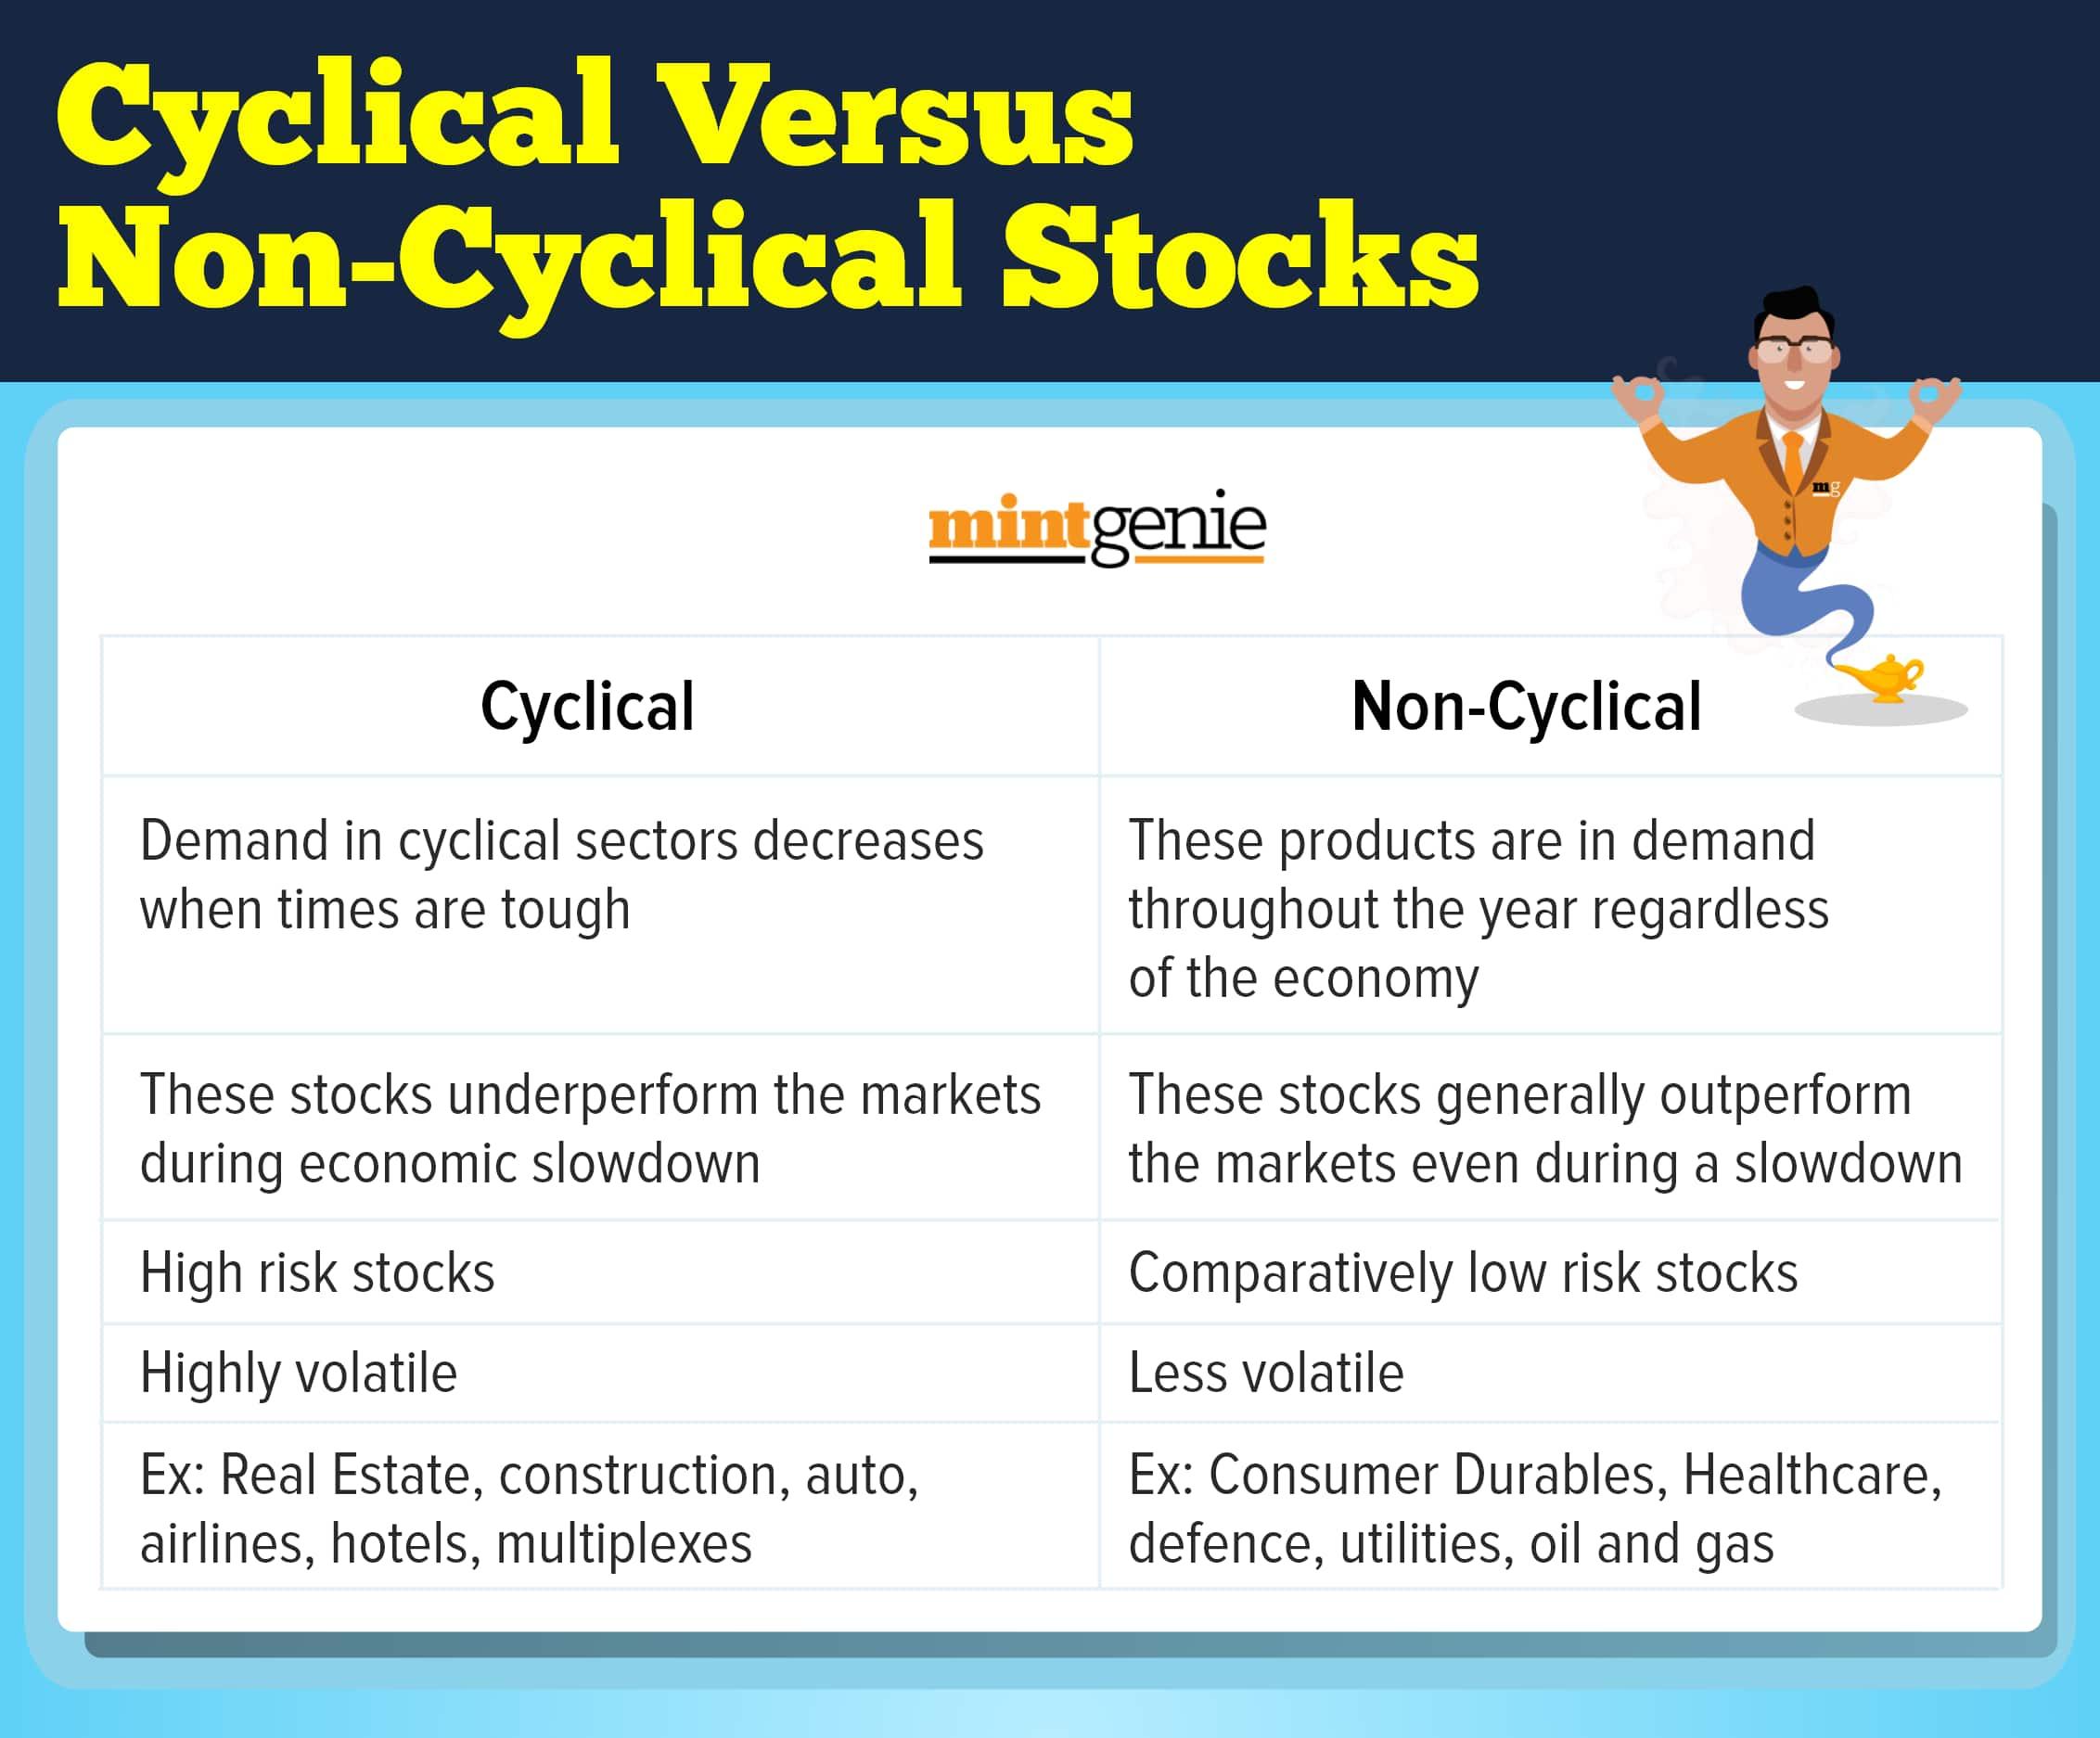 Cyclical vs non-cyclical